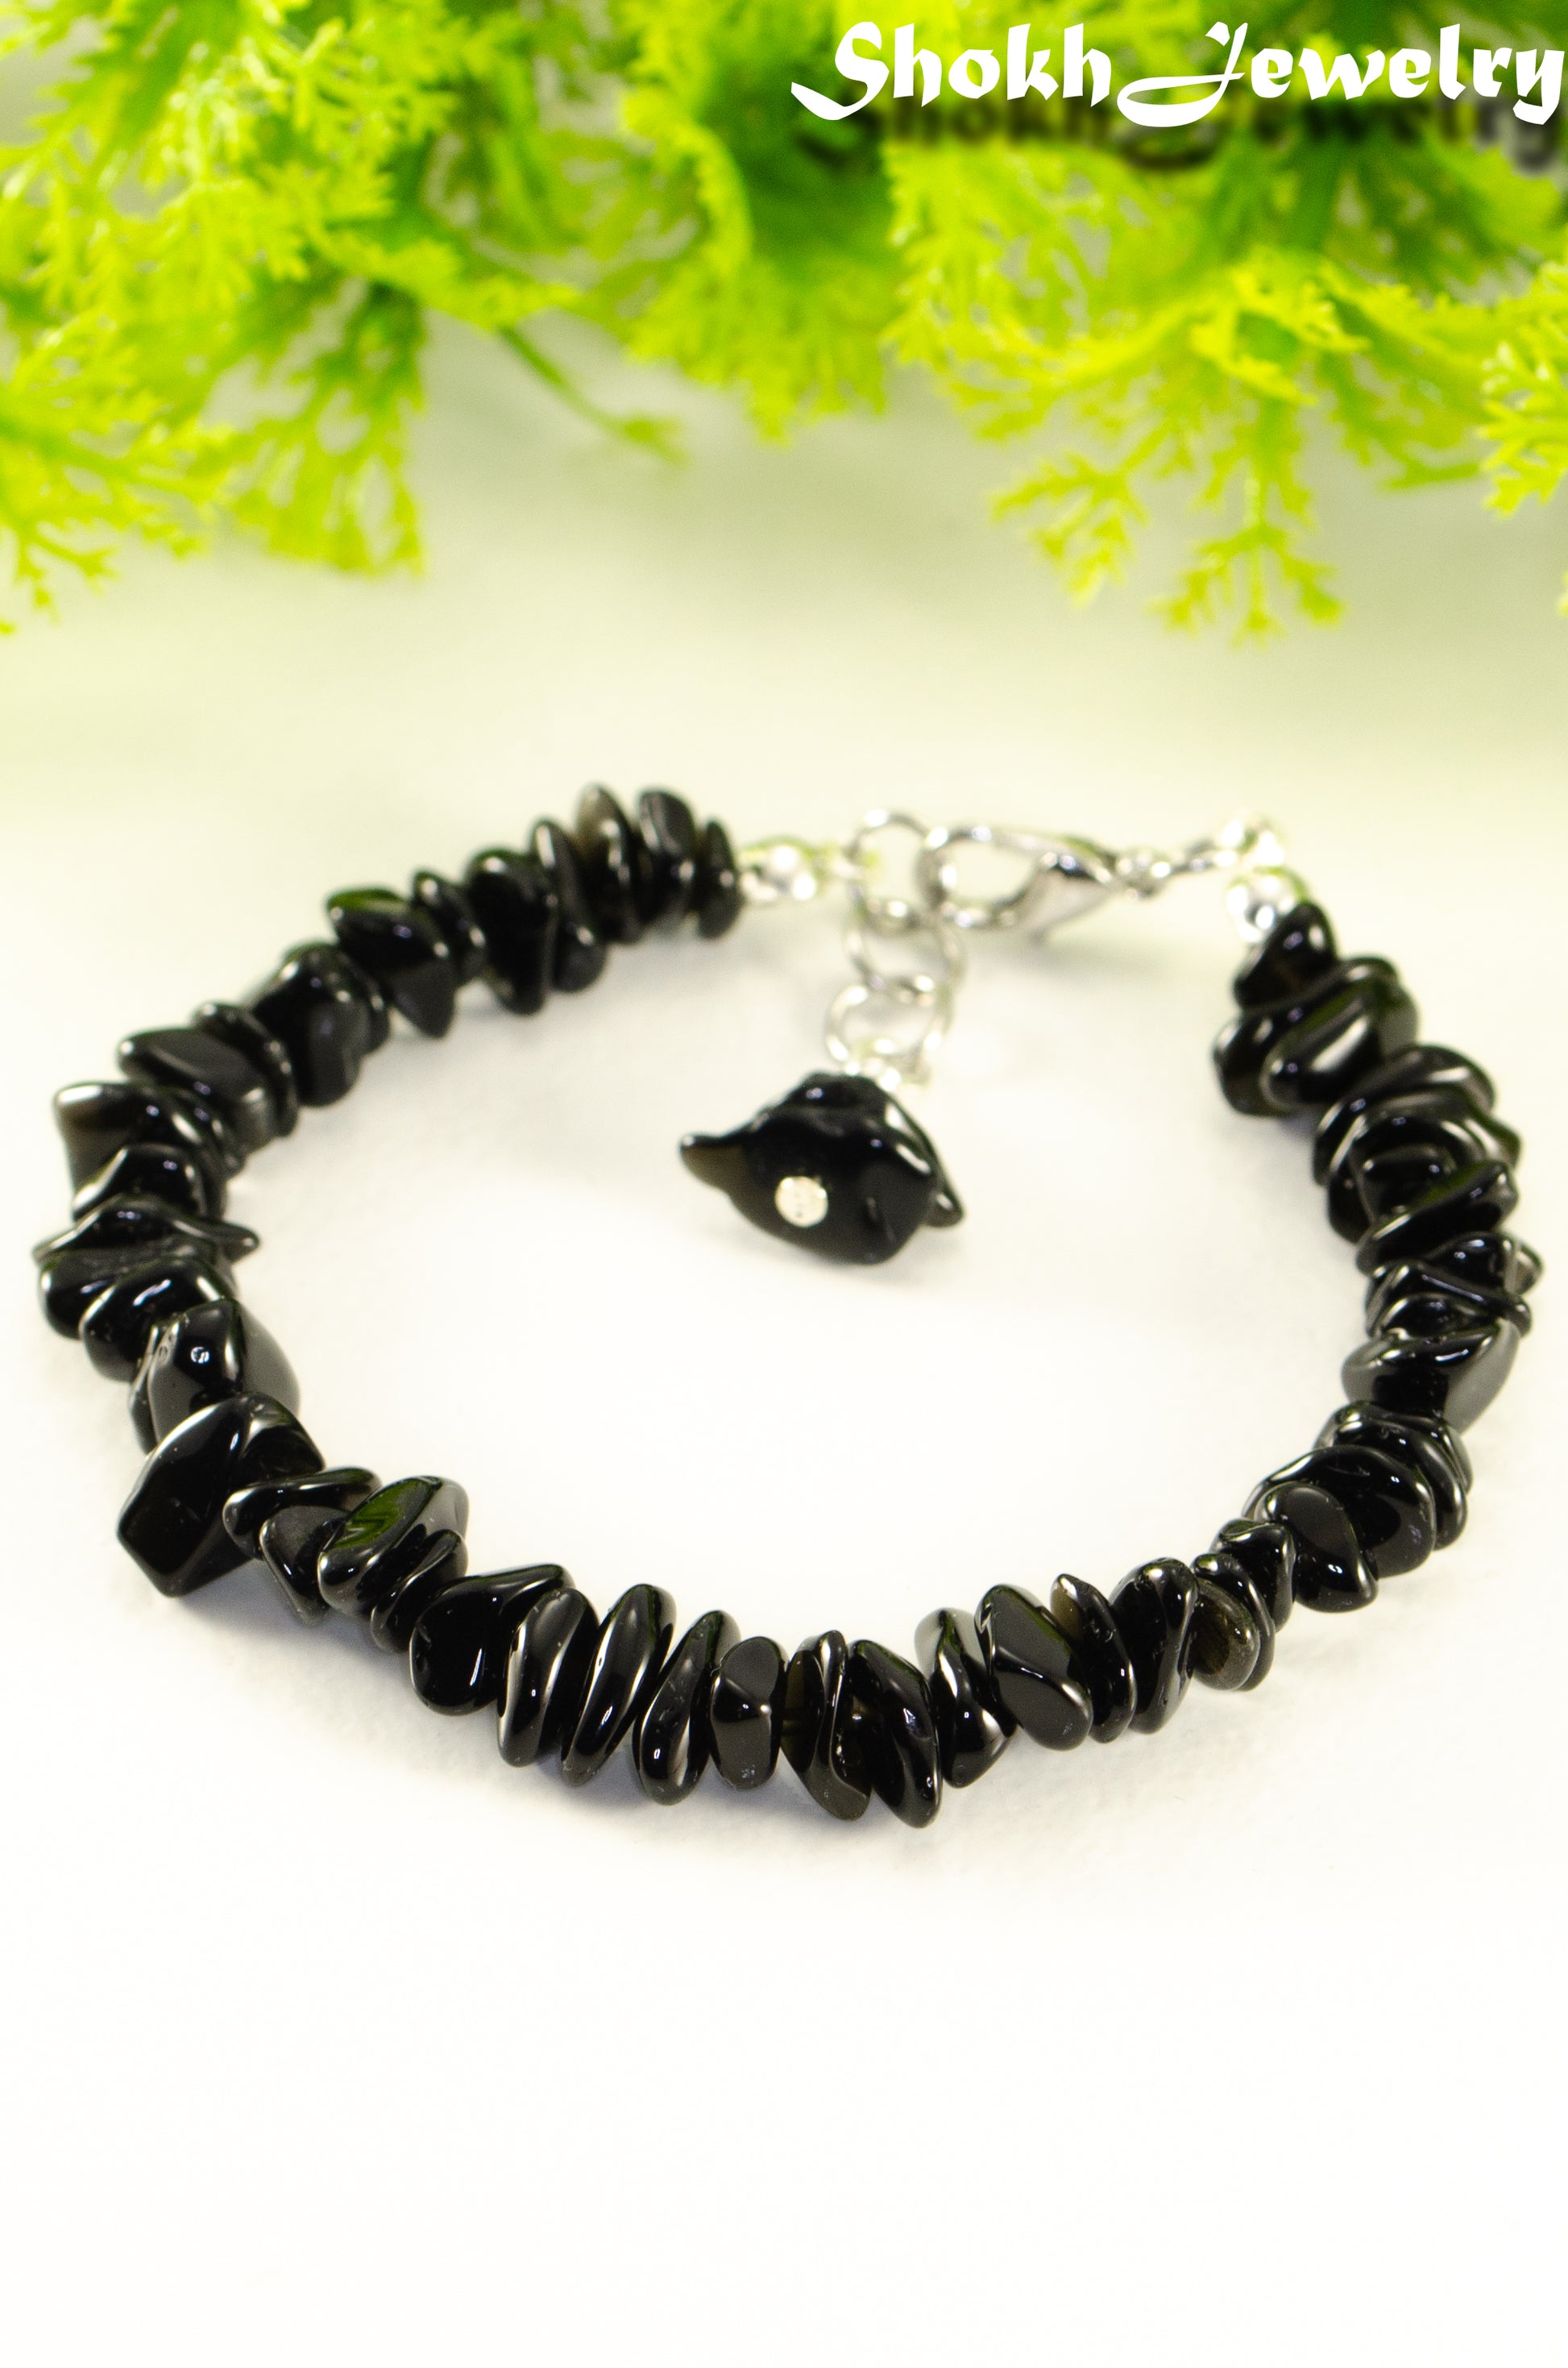 Close up of Natural Black Obsidian Crystal Chip Bracelet.